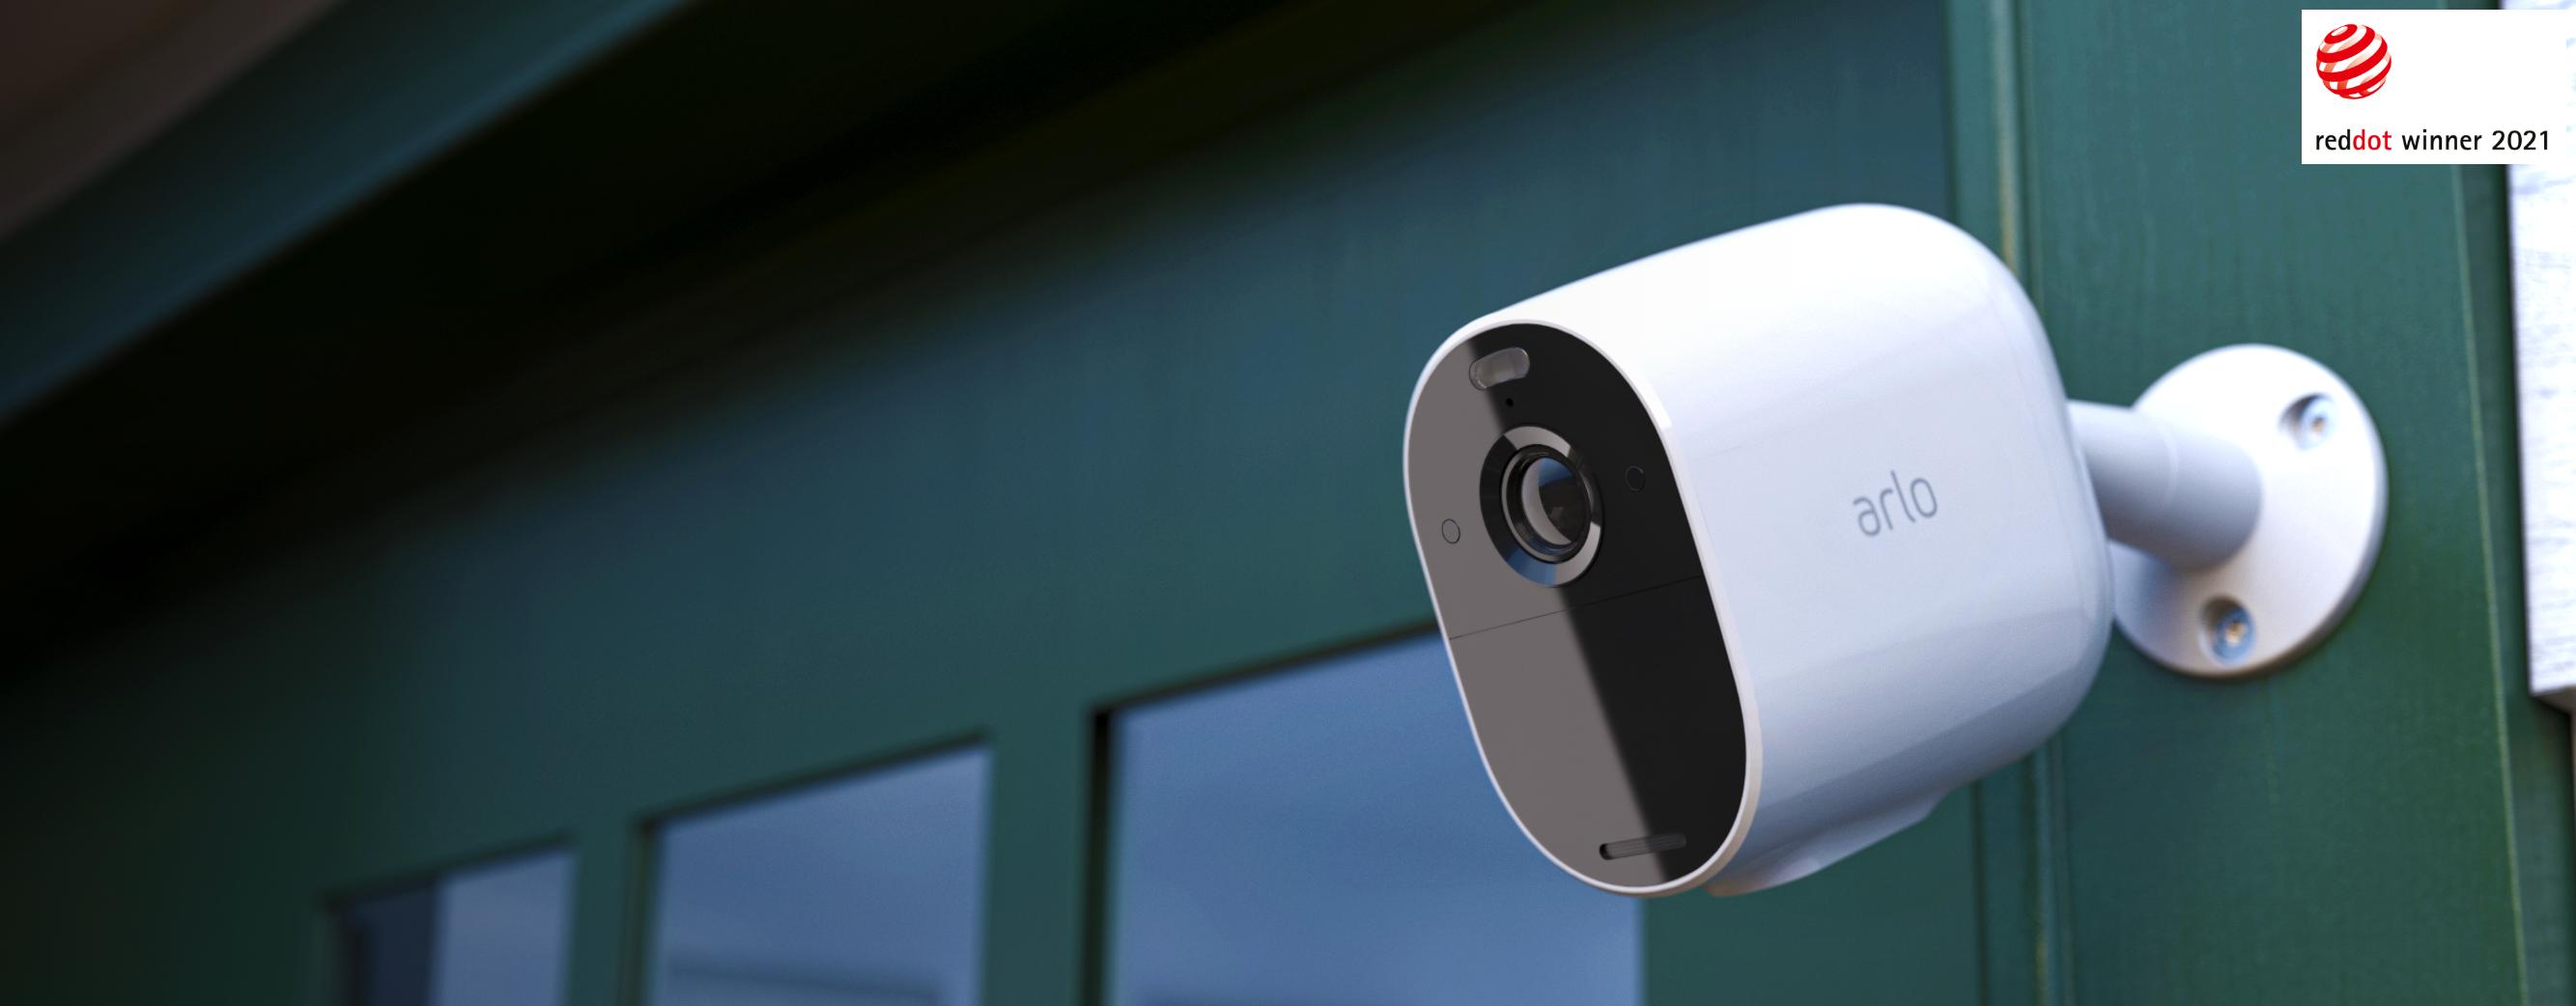 Arlo Ultra väggmonterad övervakningskamera som filmar i mörker med sin inbyggda spotlight.